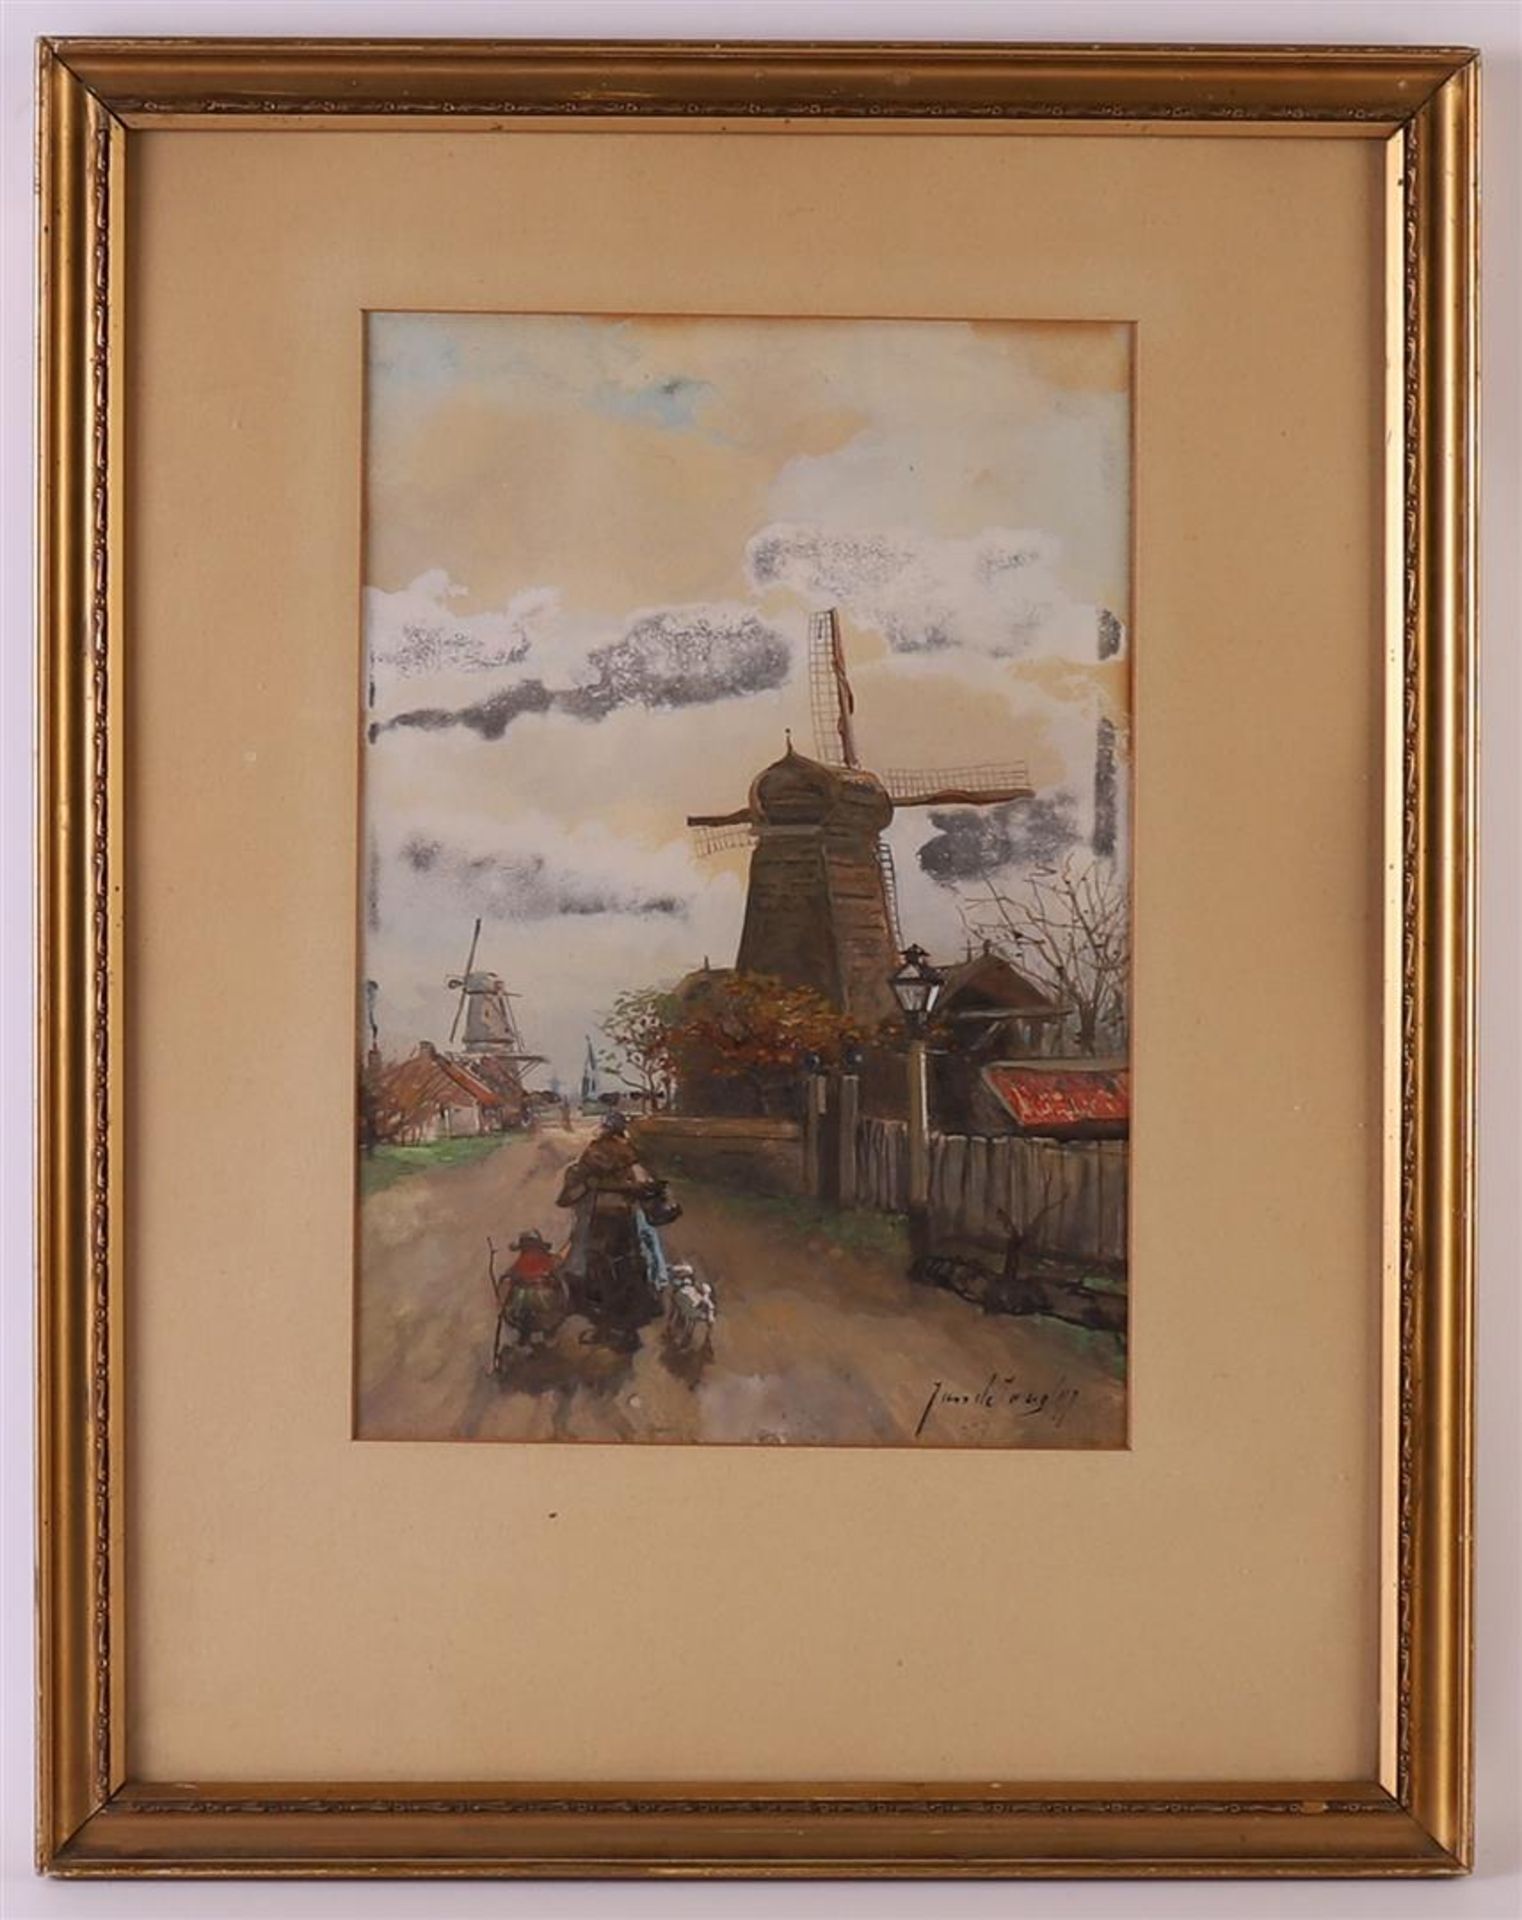 Jong de, Johannes(Jan) (Rotterdam 1864-1901) "Landscape with windmills", signed in full lower